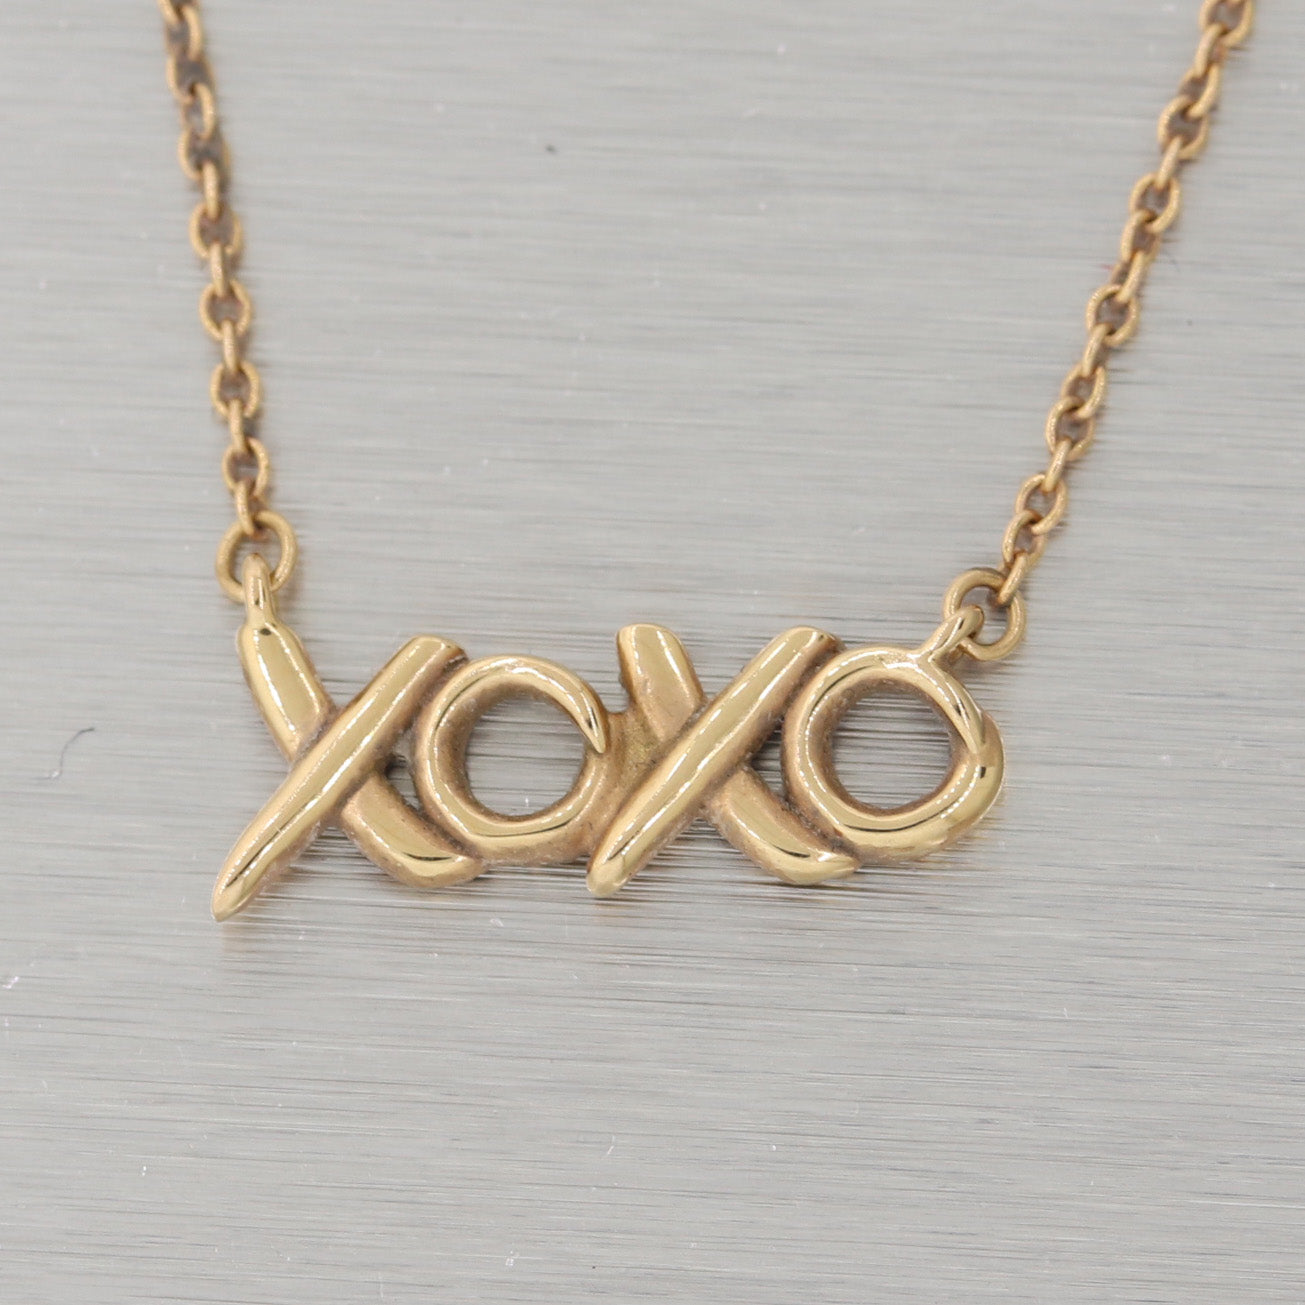 xoxo necklace tiffany